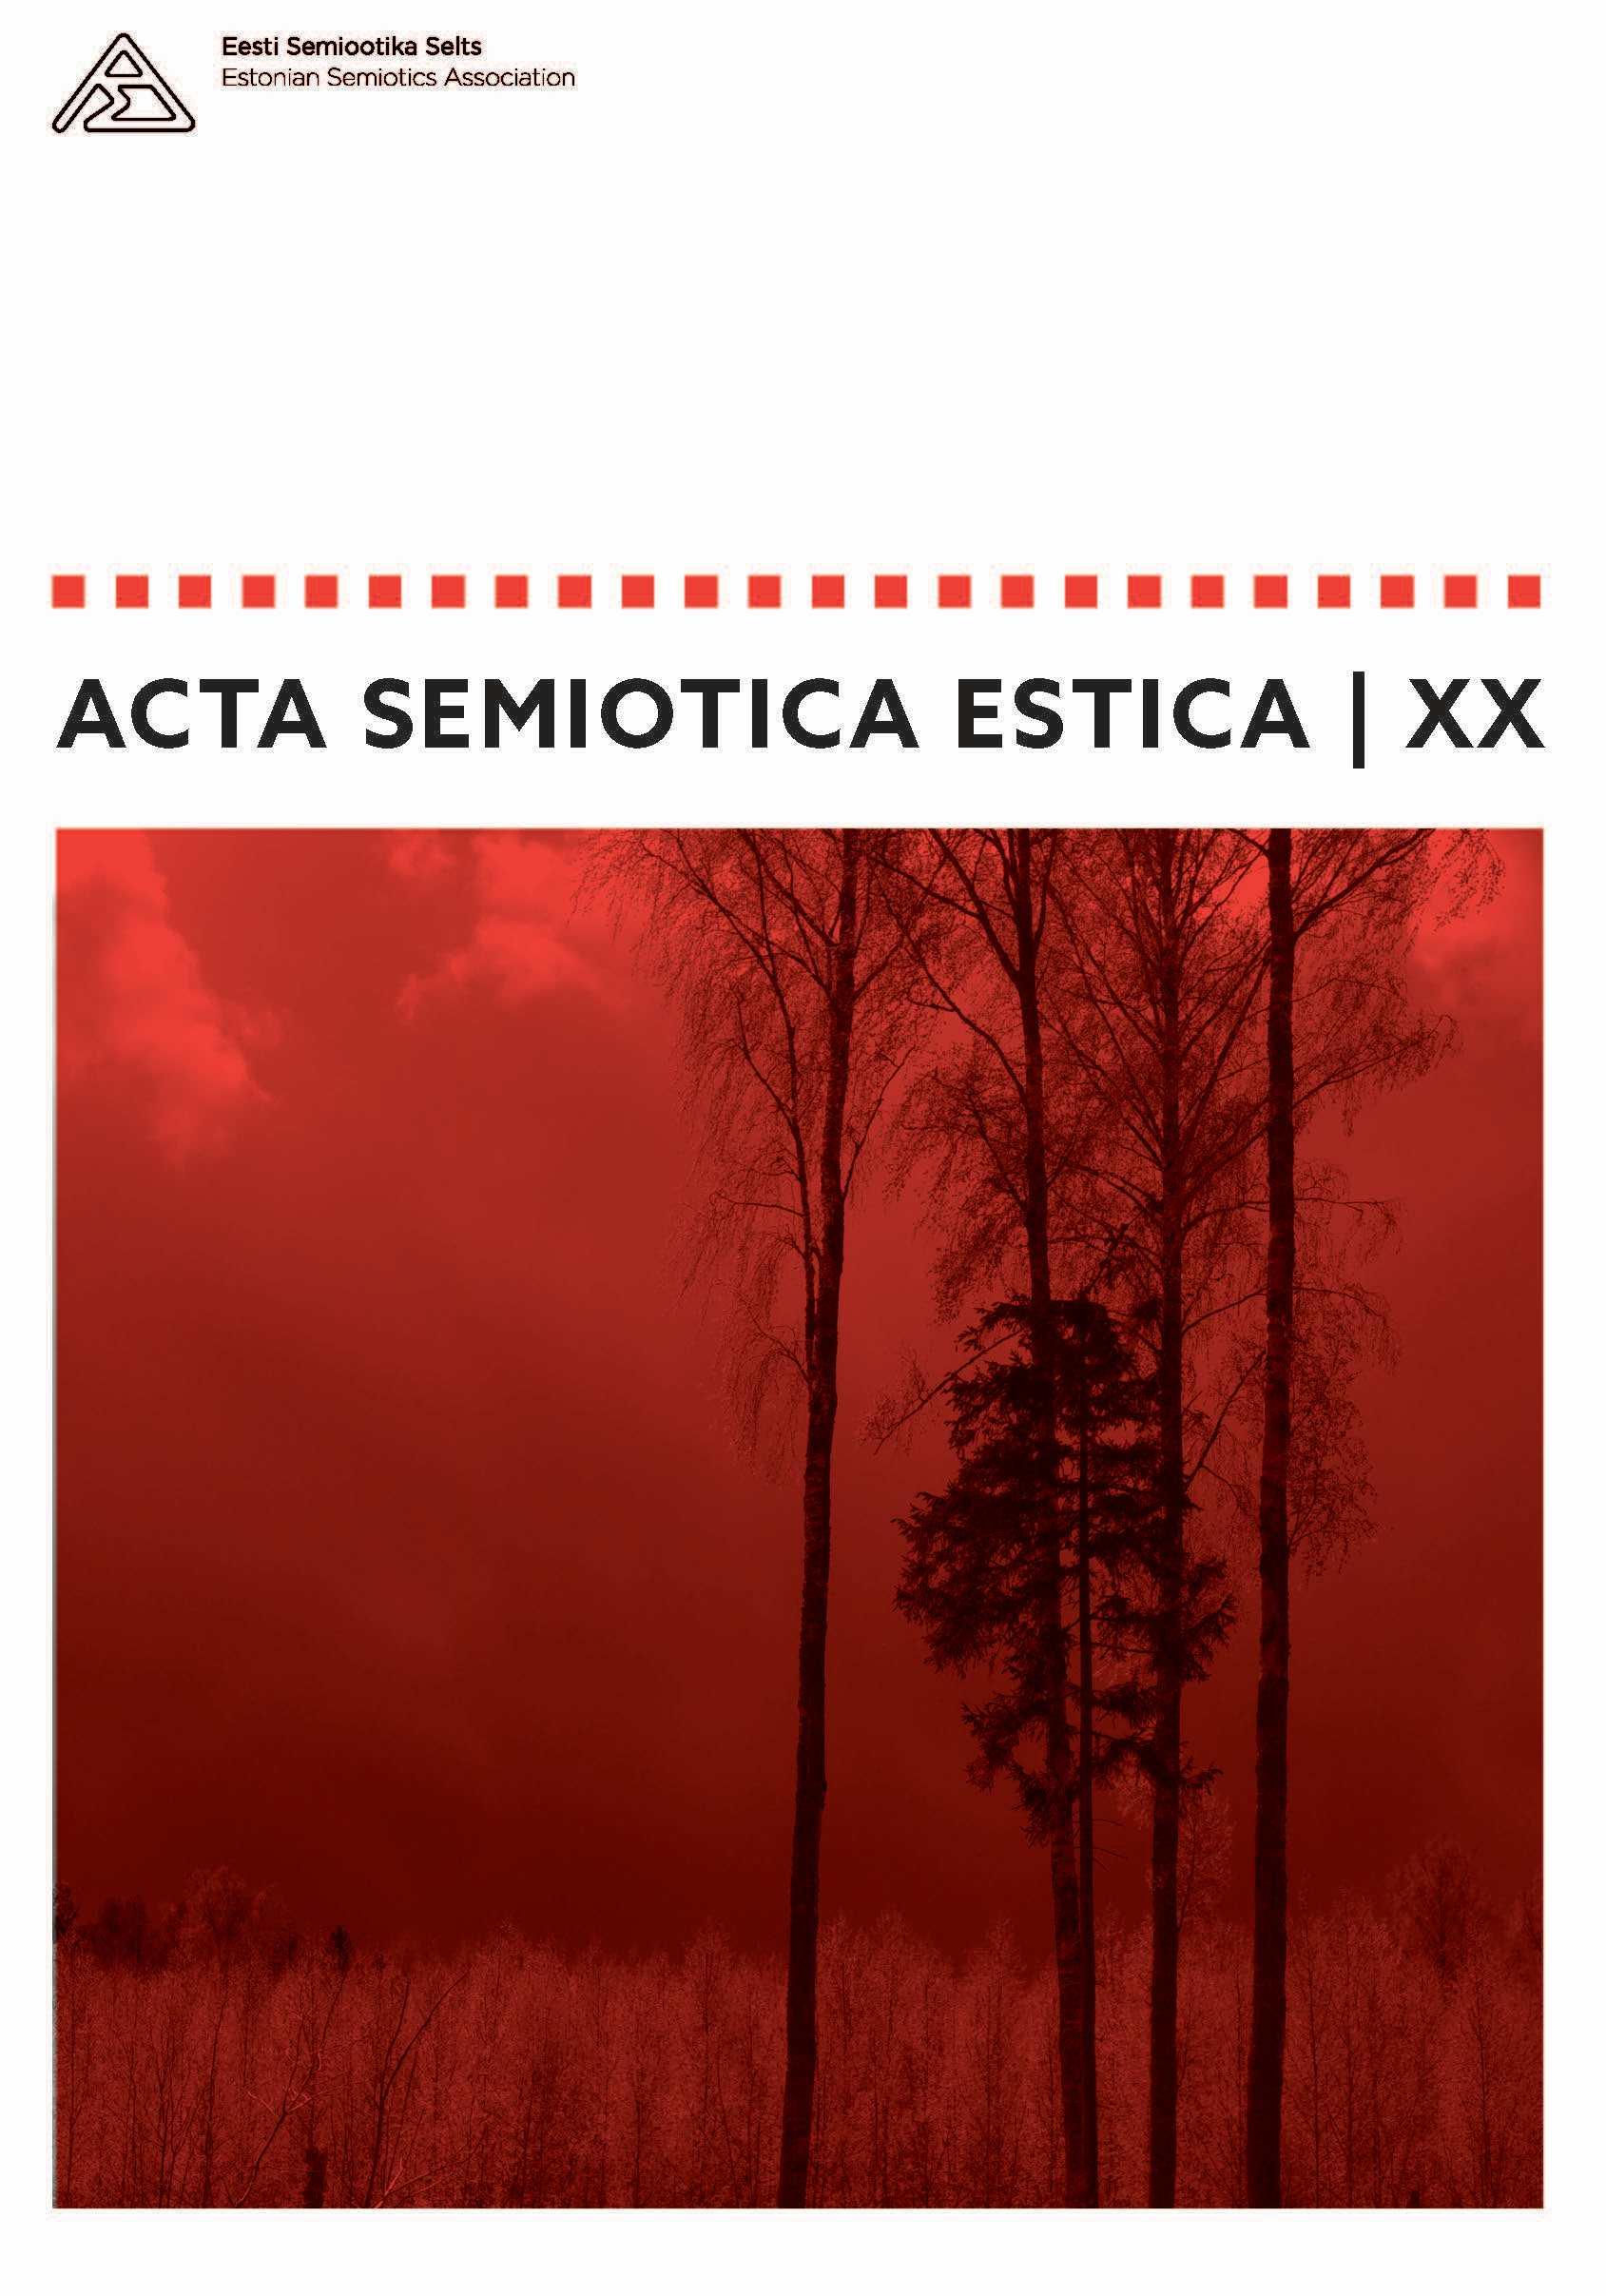 Acta Semiotica Estica XX